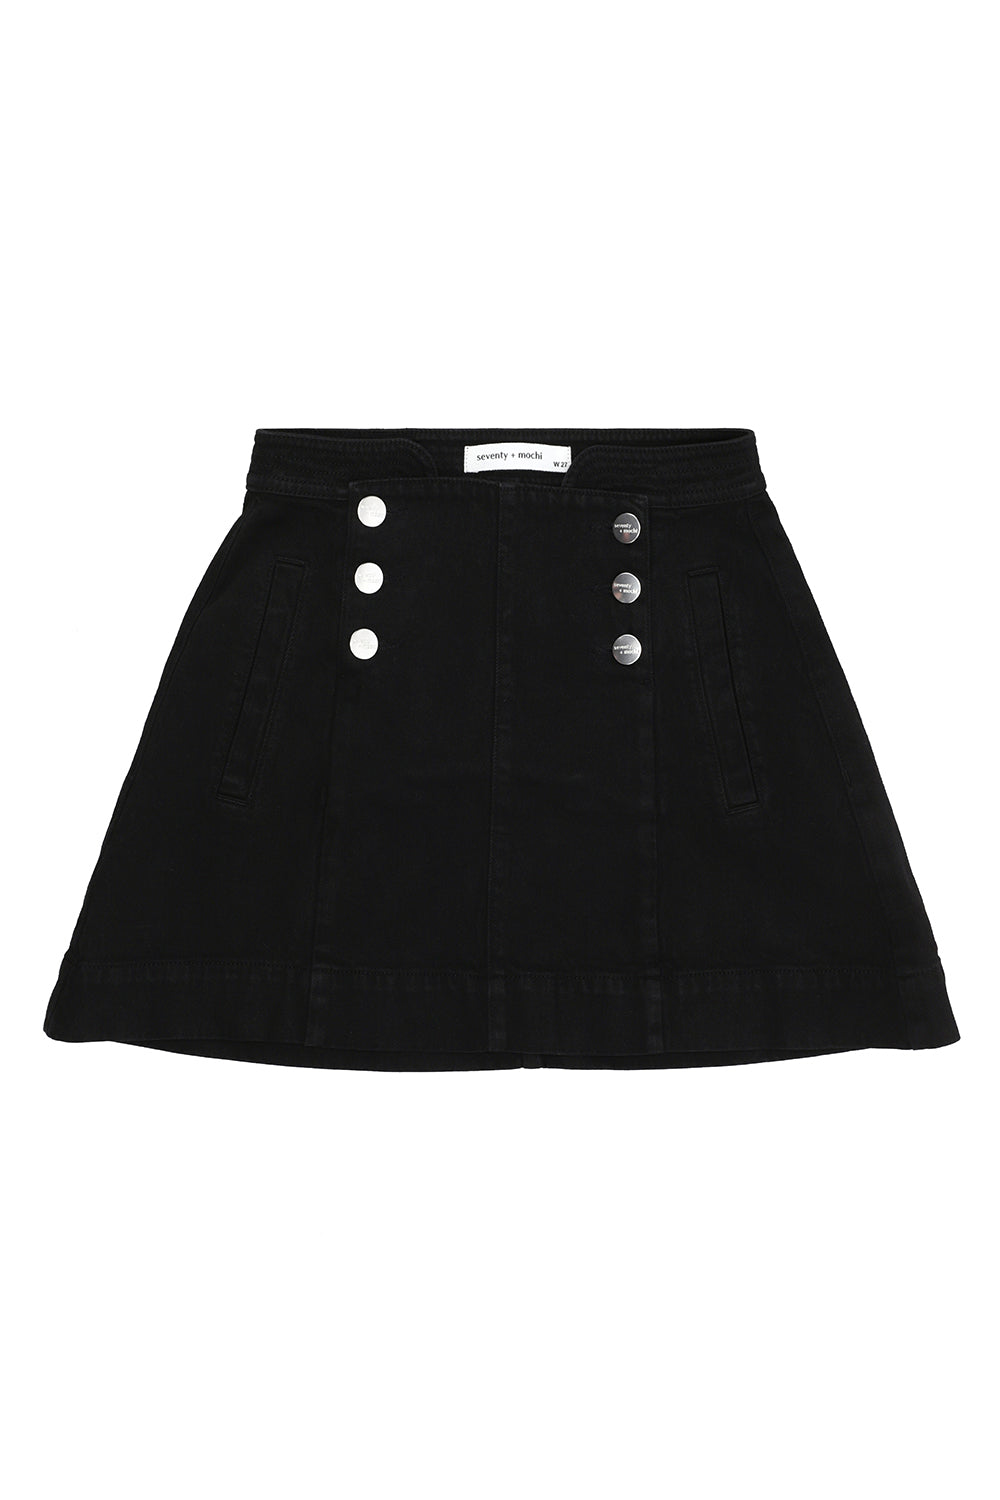 Marie Mini Skirt in Black Denim